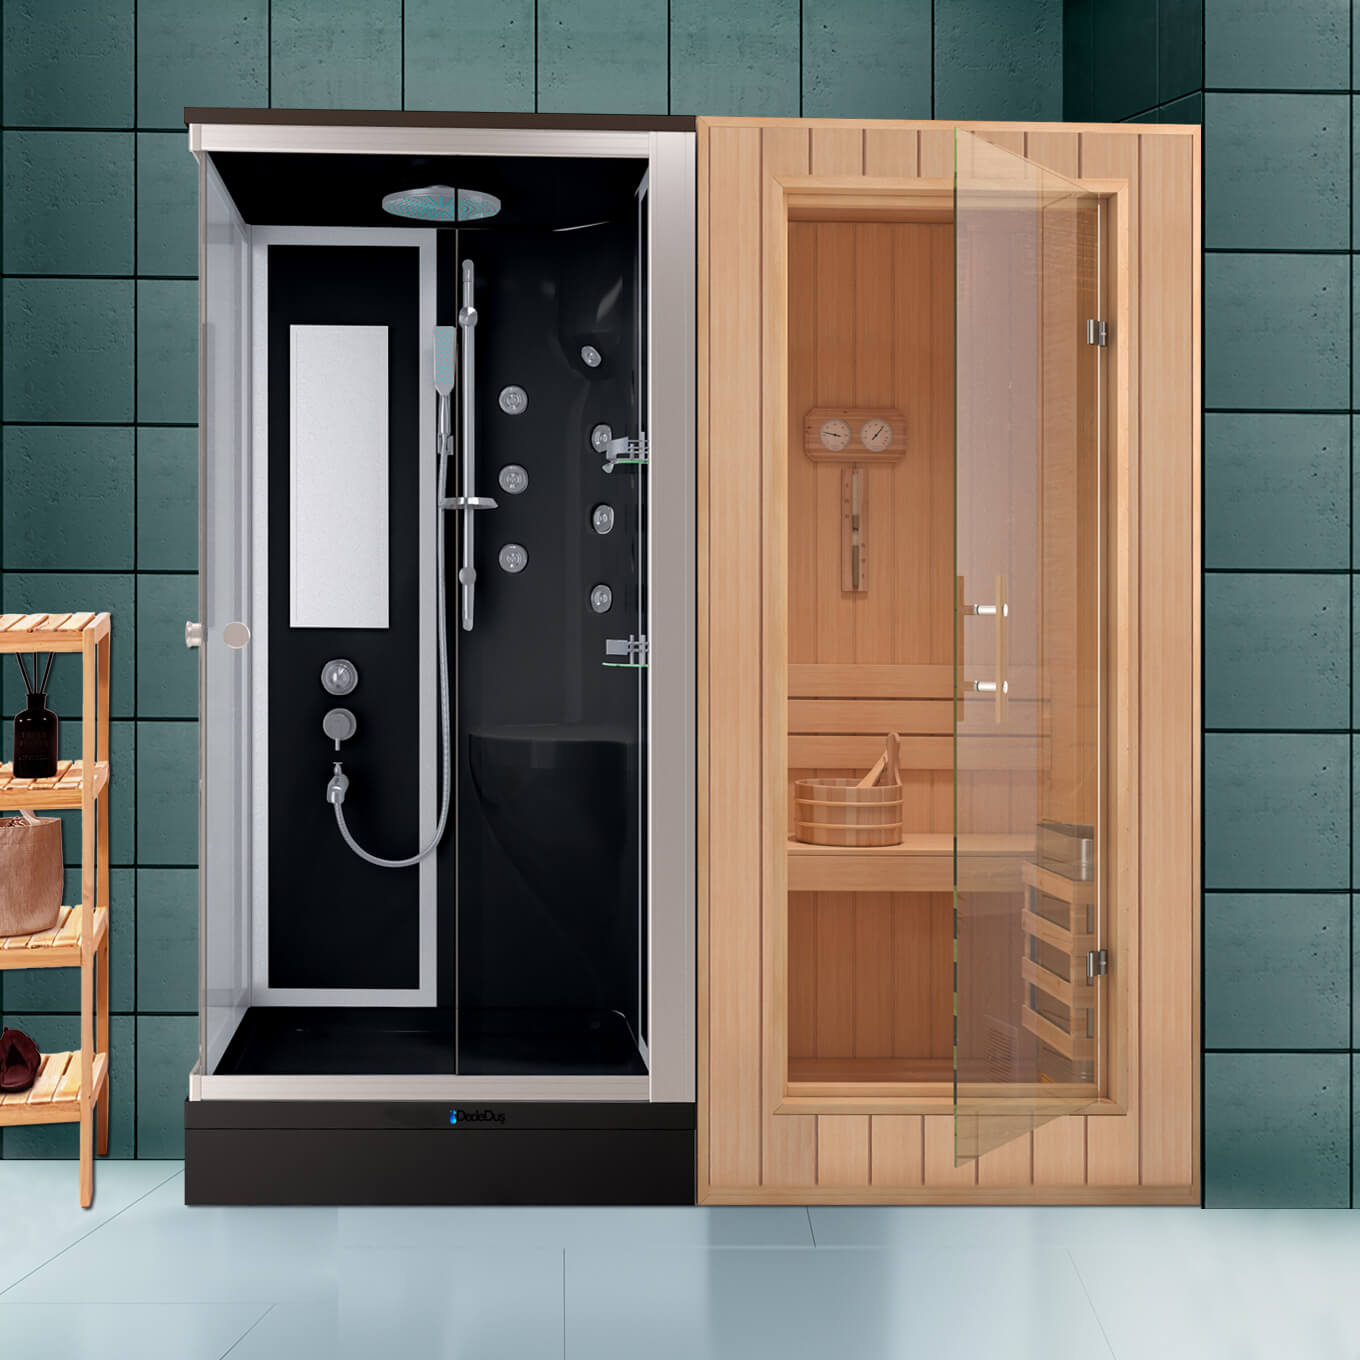 Siyah kare duş tekneli, masajlı, buharlı compacet duşakabinli, ev tipi sauna odası, Dede Duş, Çengelköy, Üsküdar, İstanbul